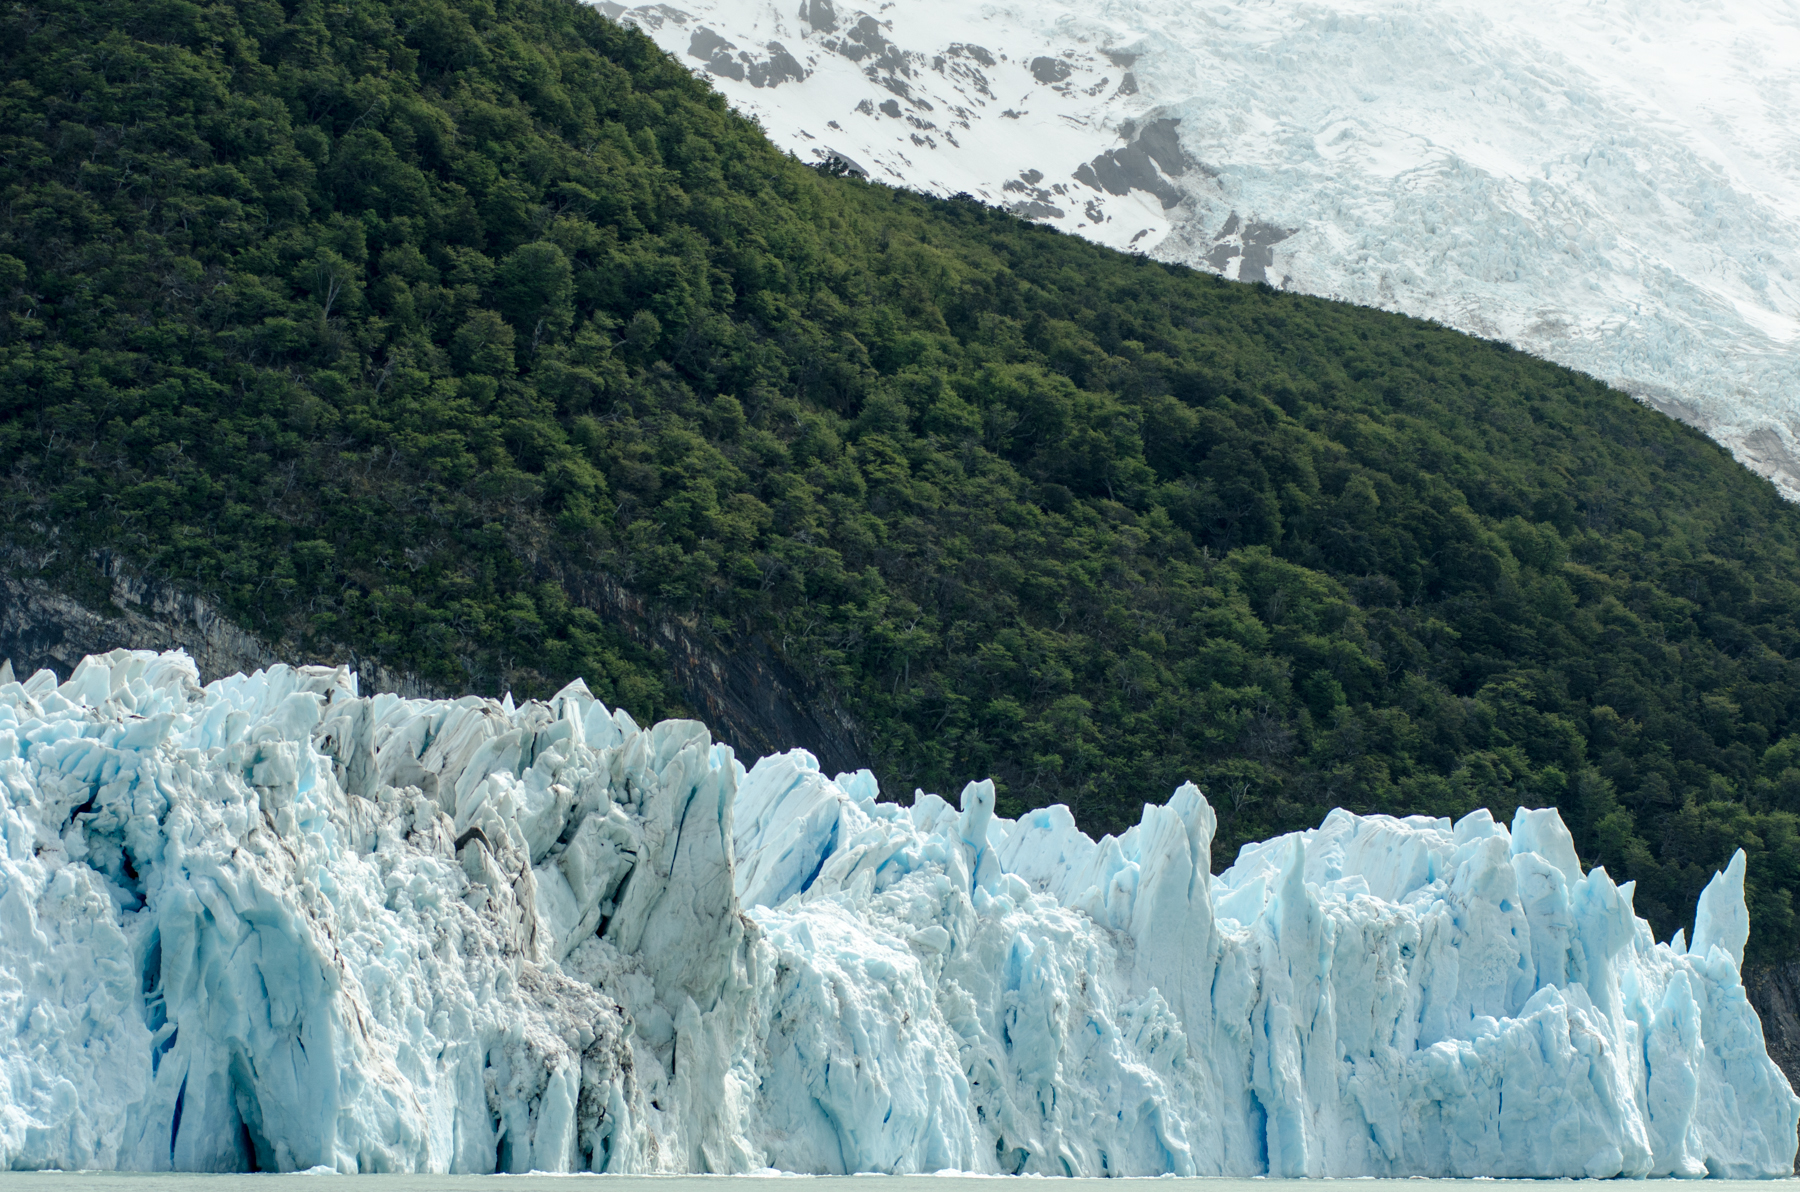 Spegazzini glacier, Los Glaciares National Park, Argentina, Patagonia